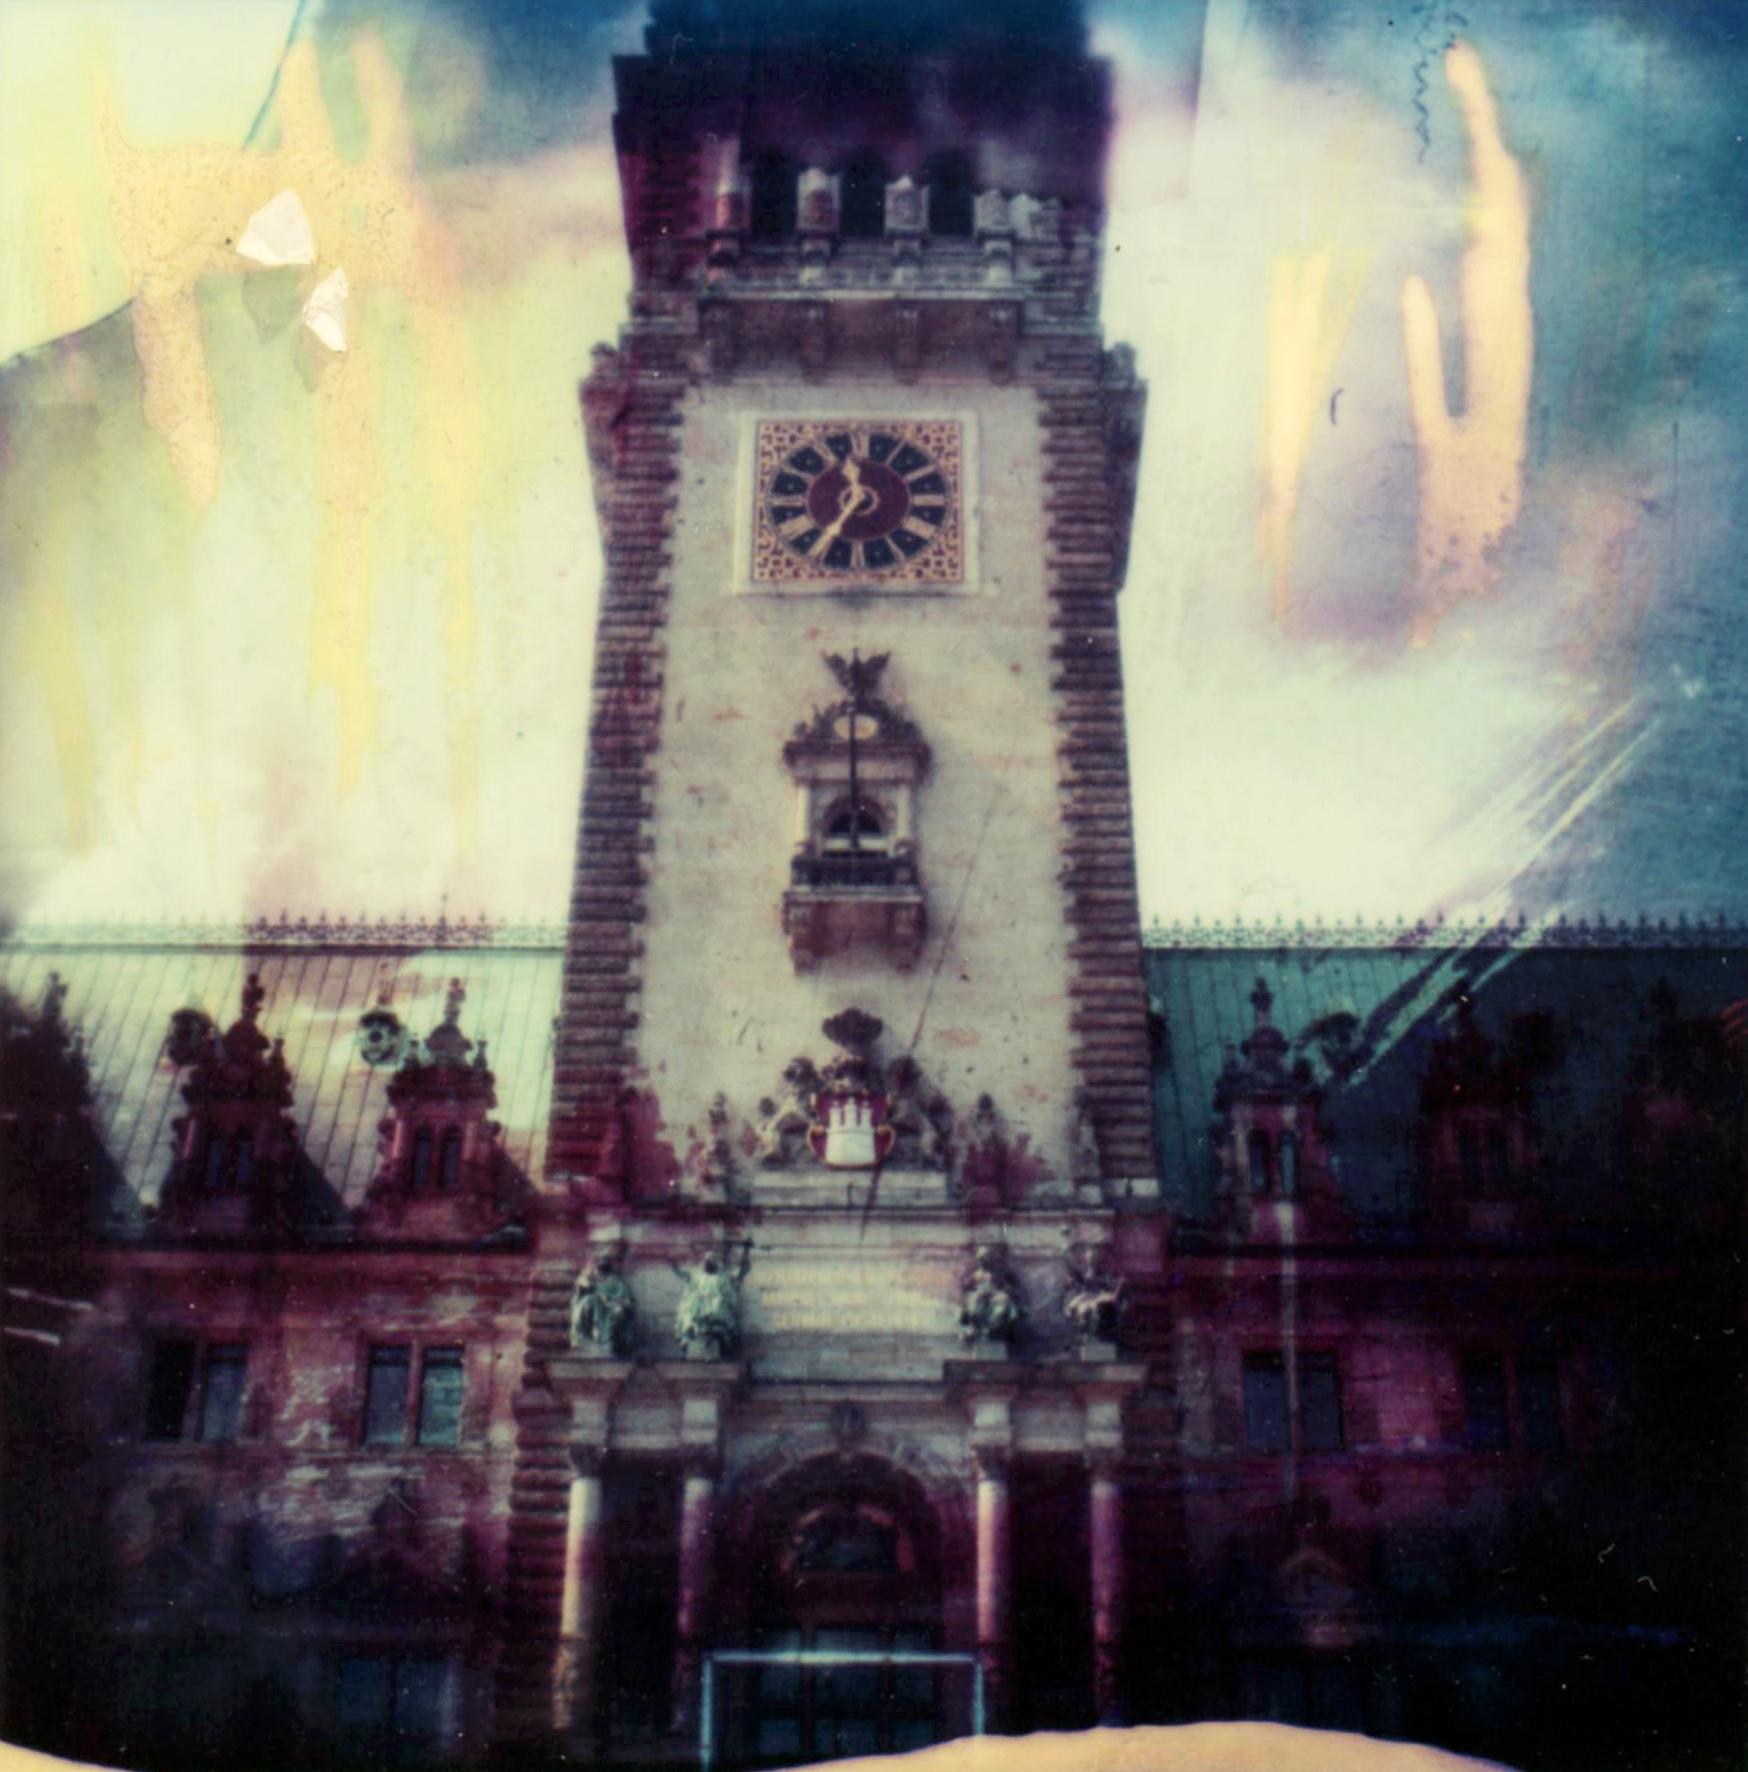 Hamburg-Rathaus #02 (Damals gesehen, getan) - Polaroid, Landschaft, US, Farbe